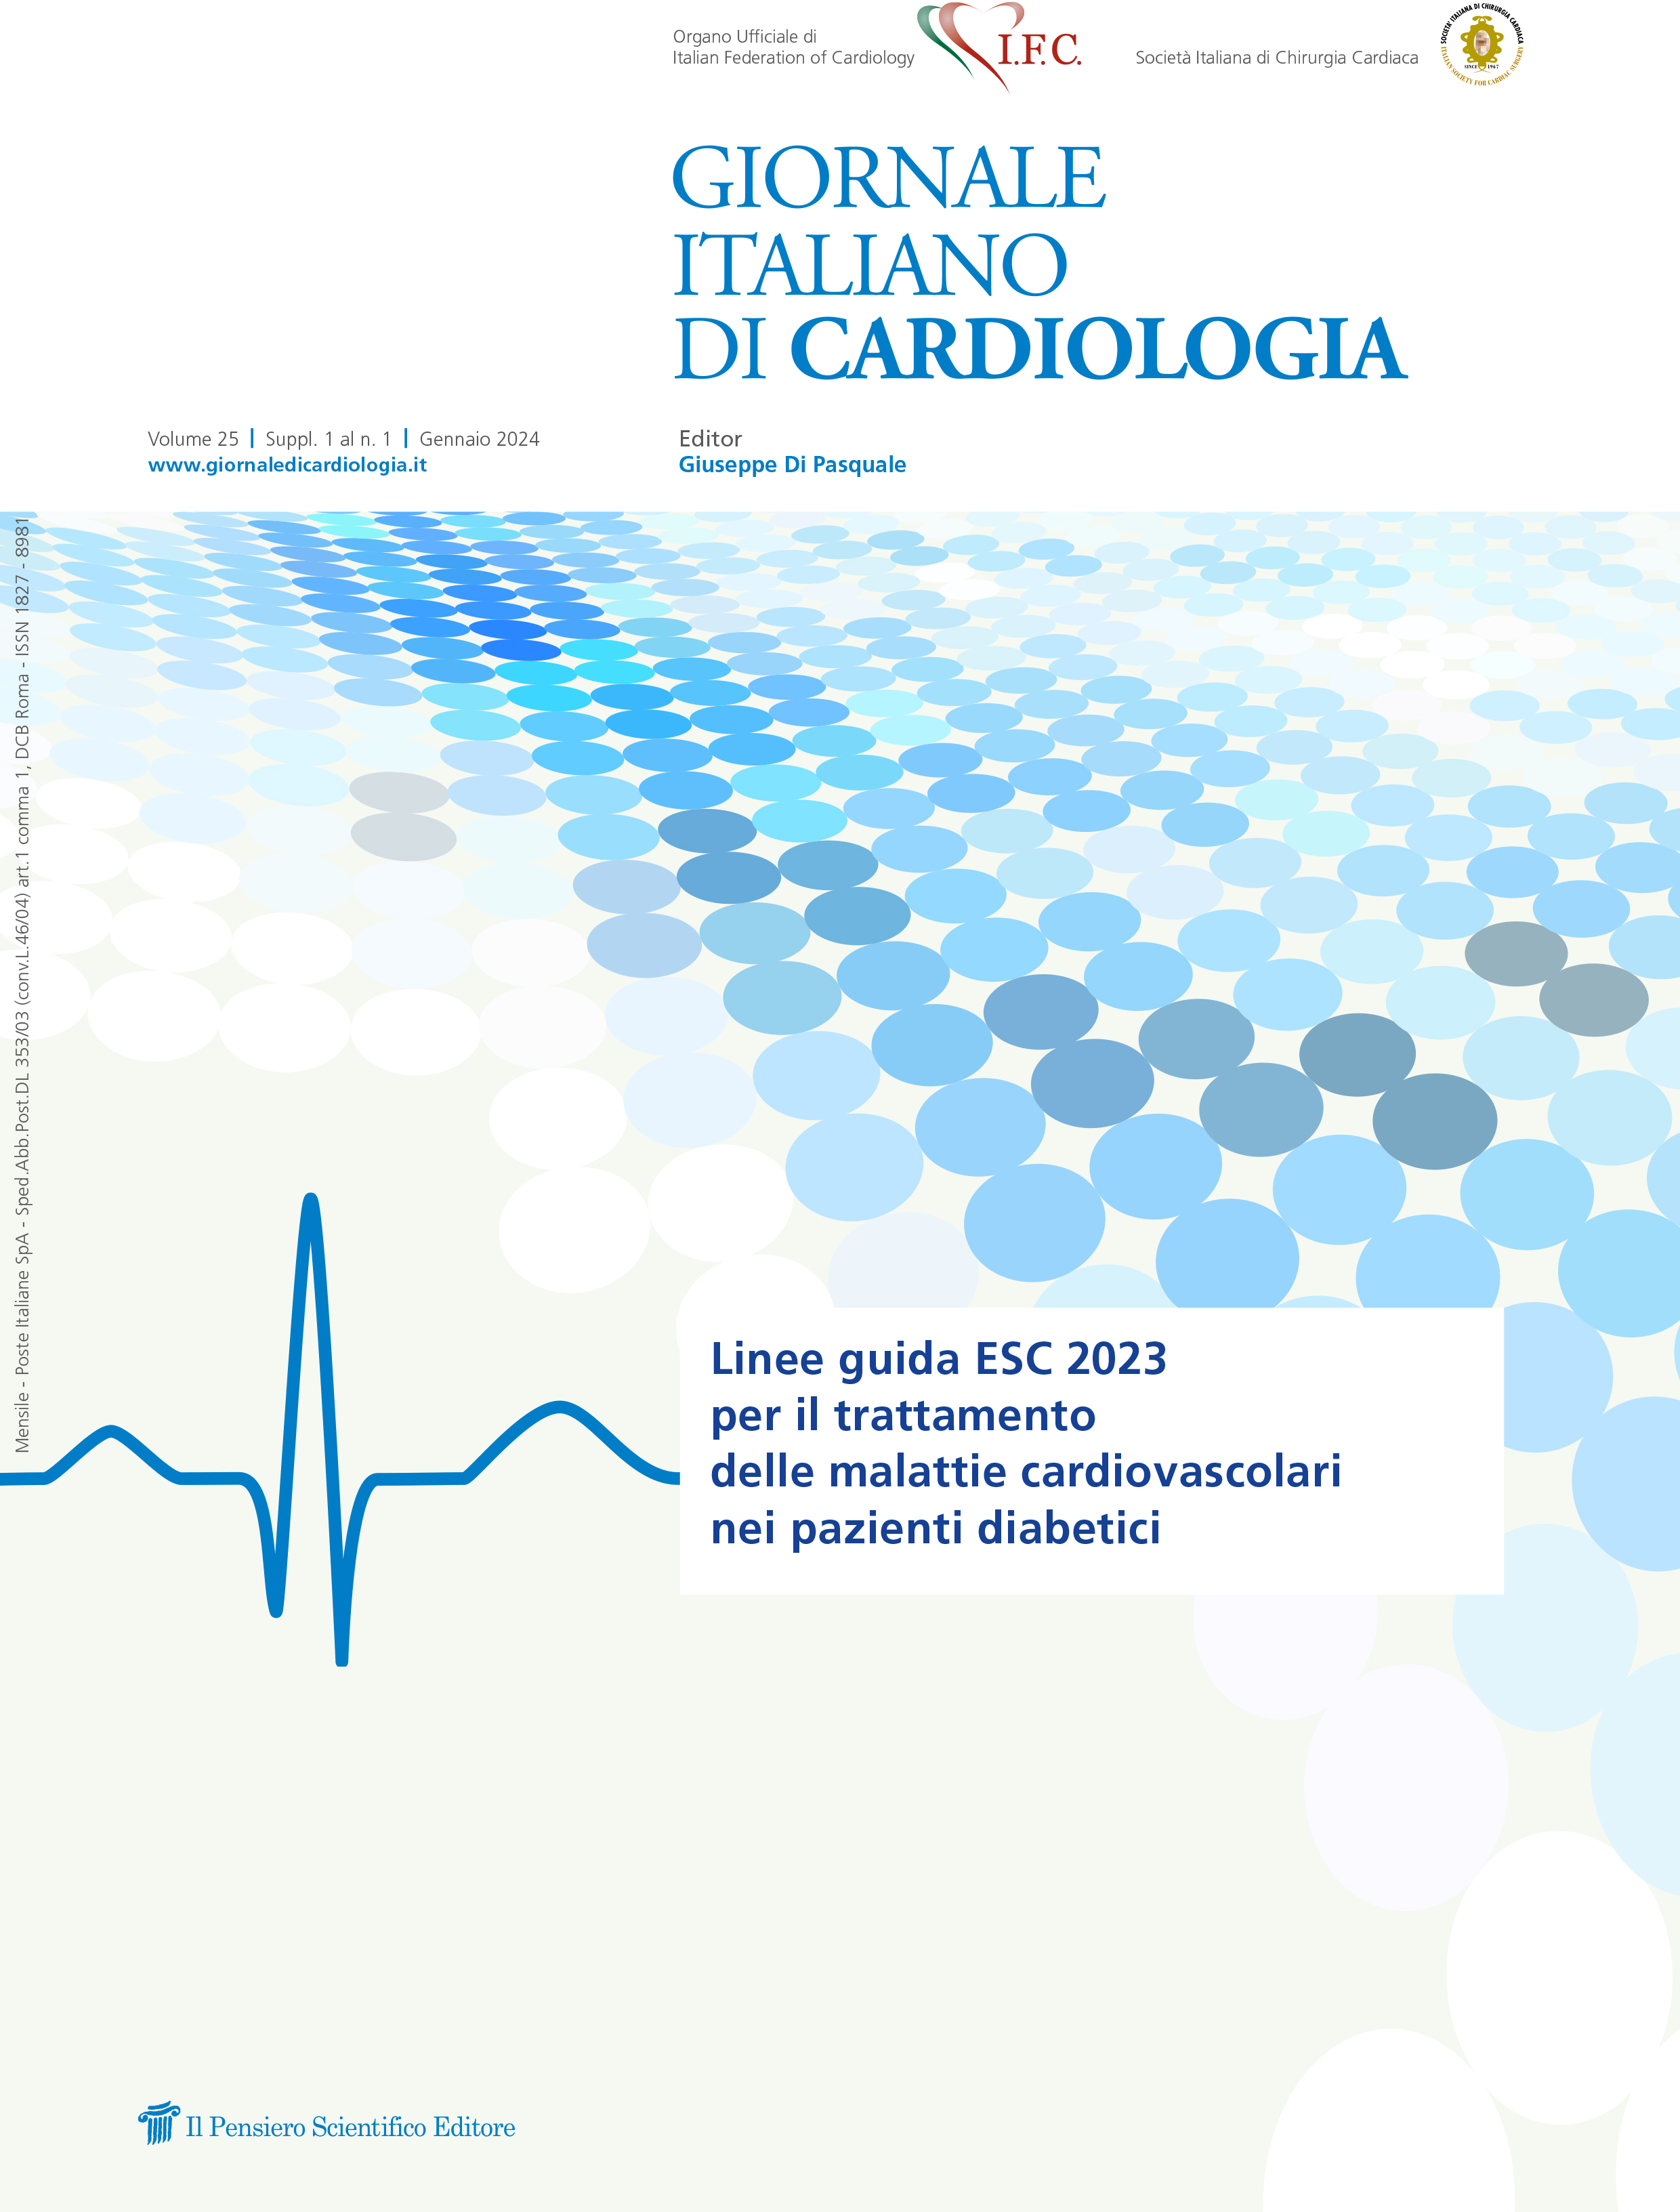 2024 Vol. 25 Suppl. 1 al N. 1 GennaioLinee guida ESC 2023 per il trattamento delle malattie cardiovascolari nei pazienti diabetici